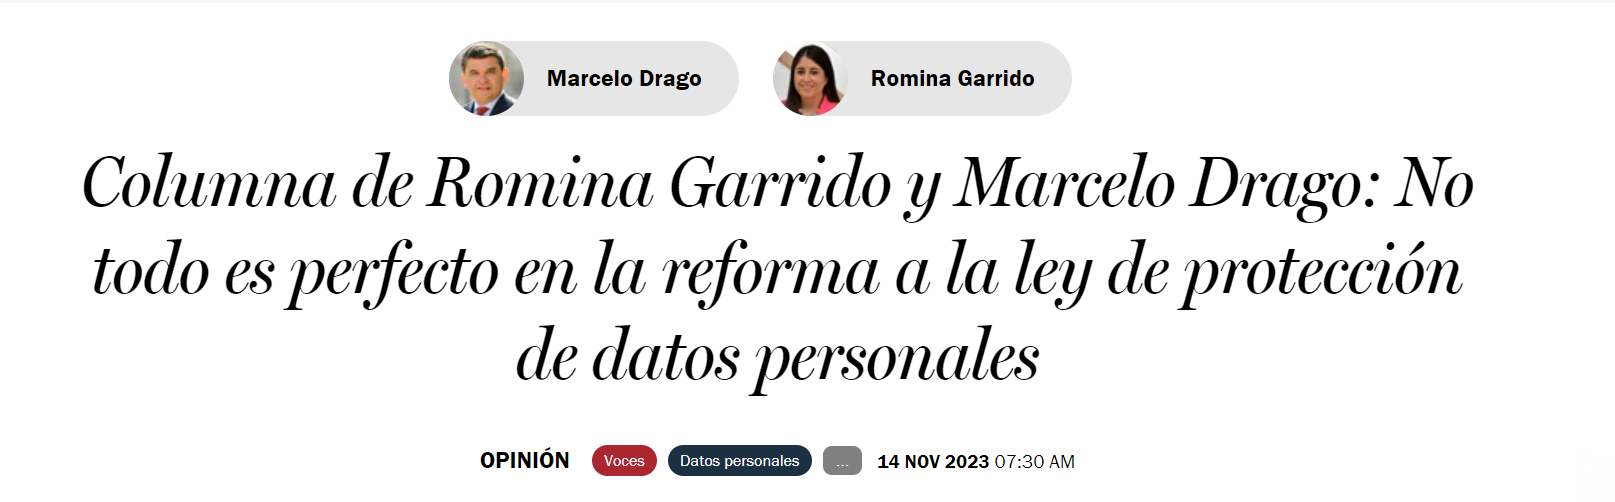 Columna de Romina Garrido y Marcelo Drago: No todo es perfecto en la reforma a la ley de protección de datos personales